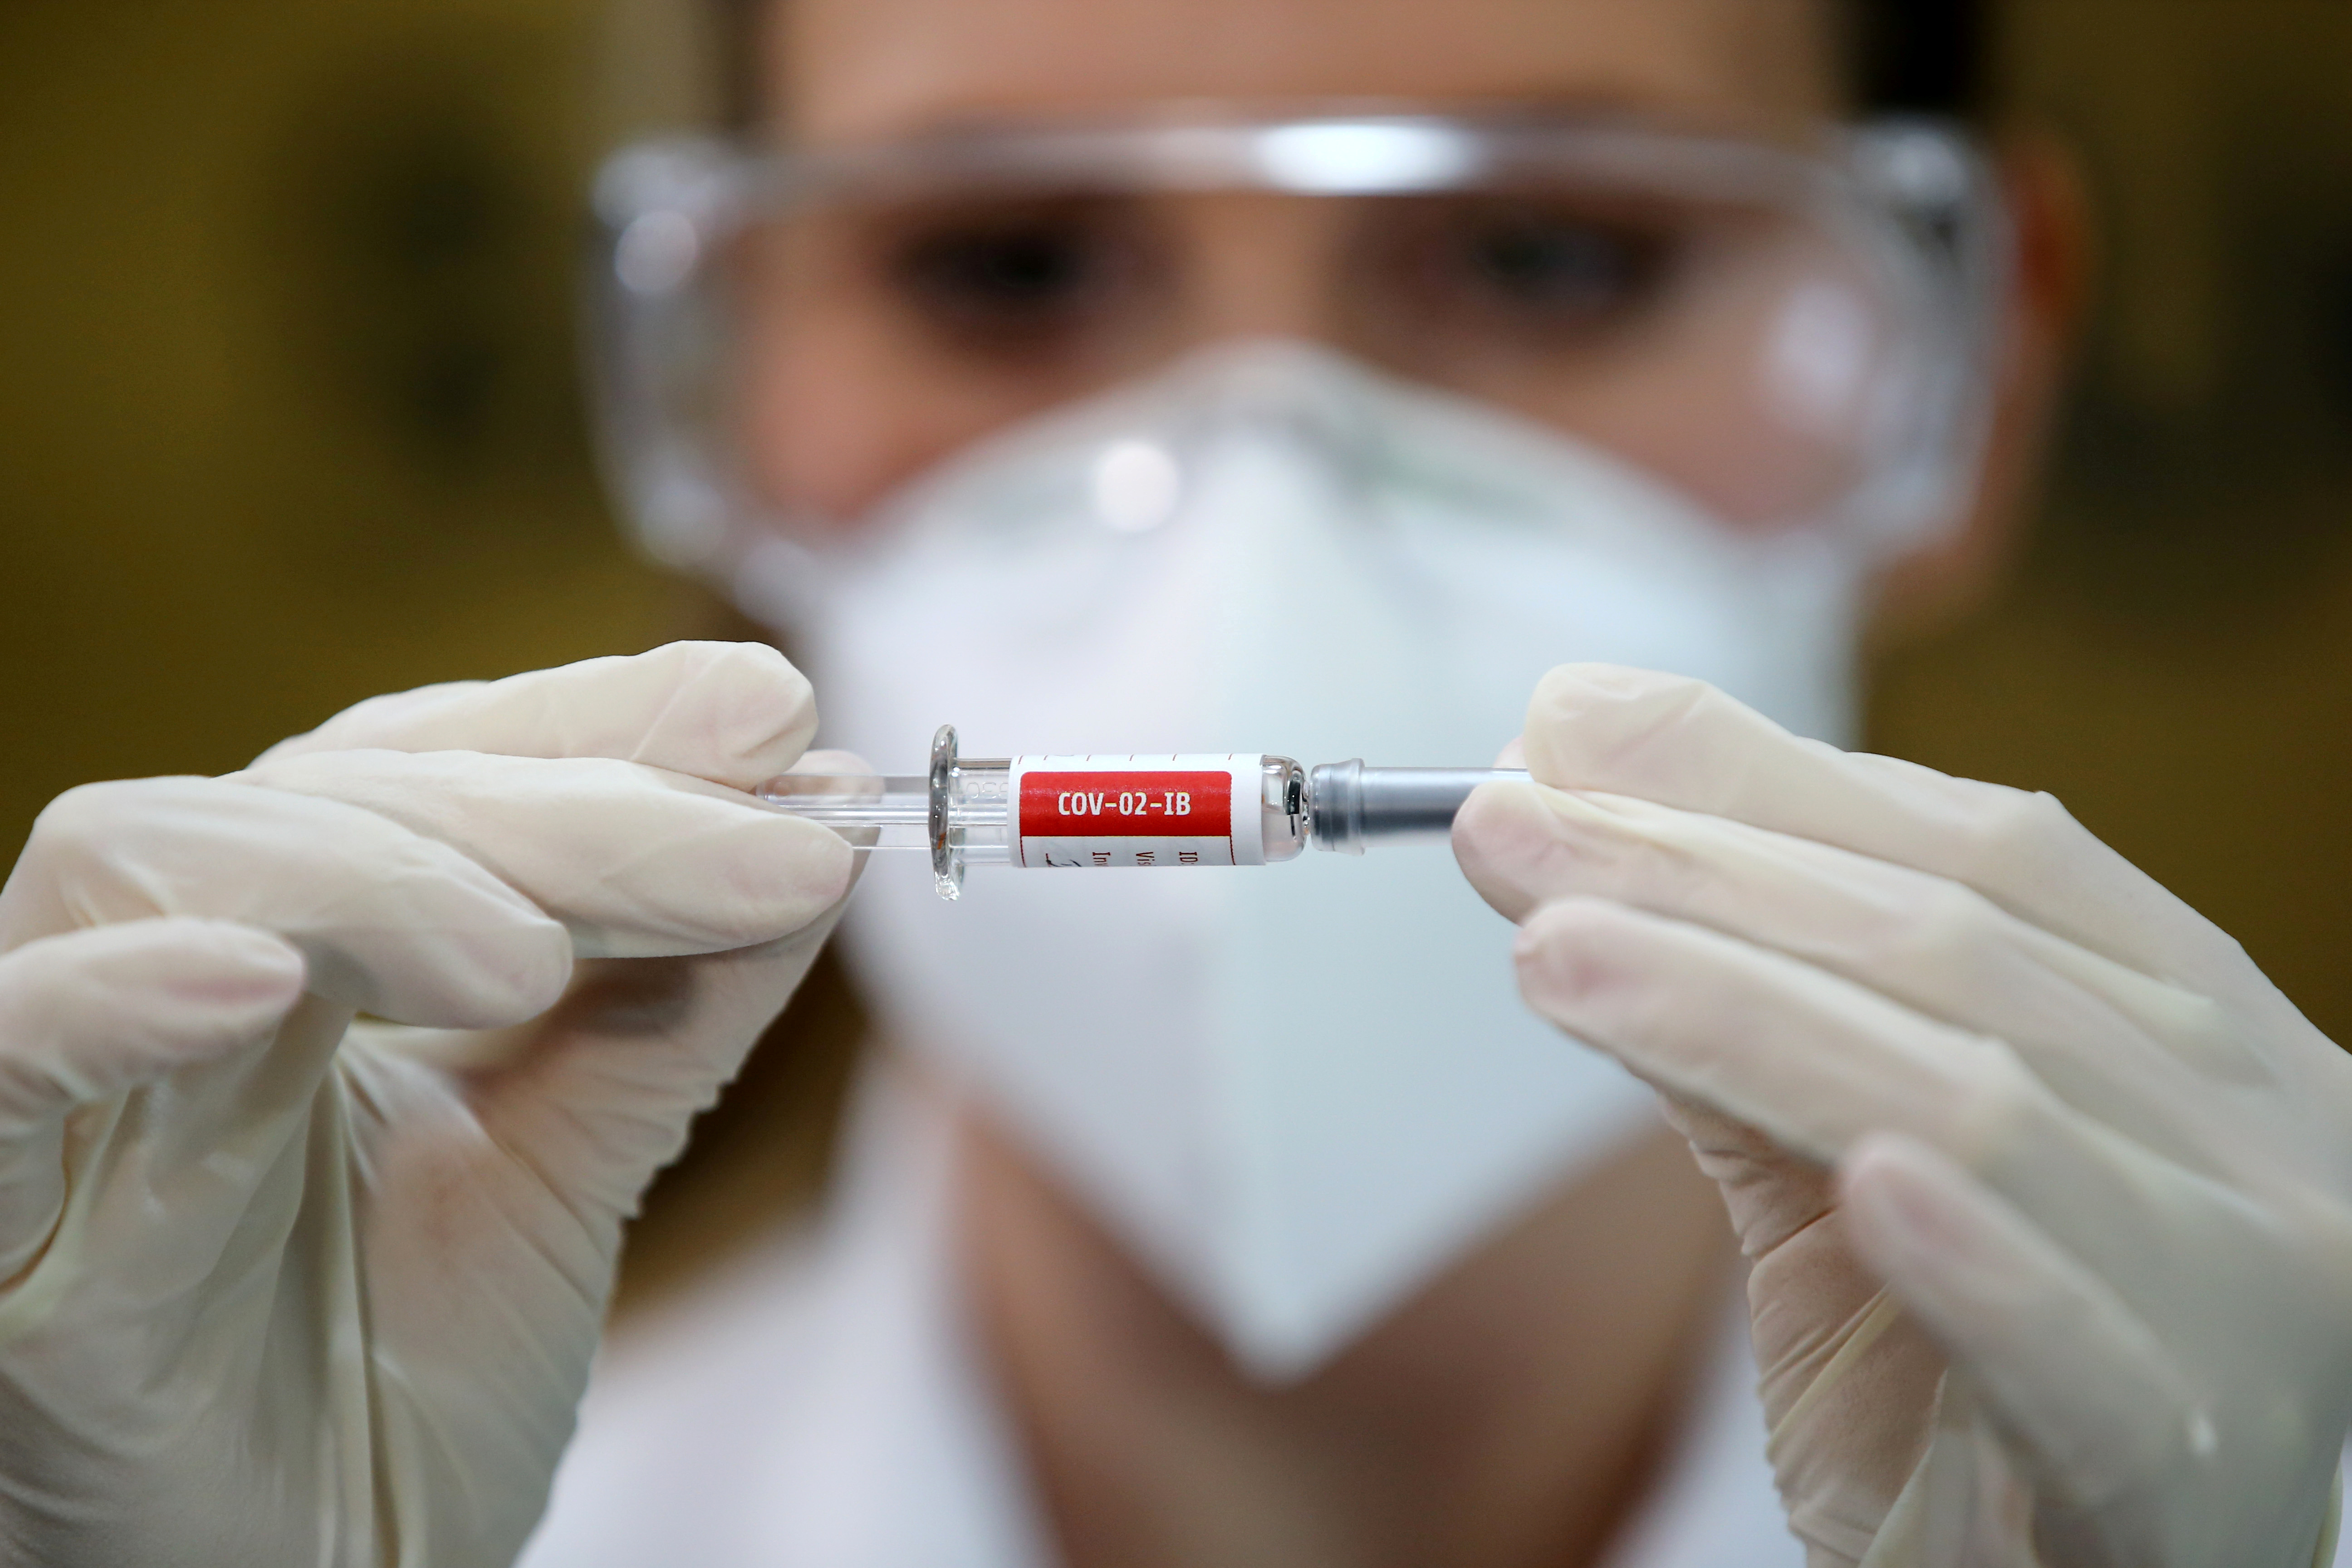 Oxford descarta distribuir vacunas contra el coronavirus antes de 2021